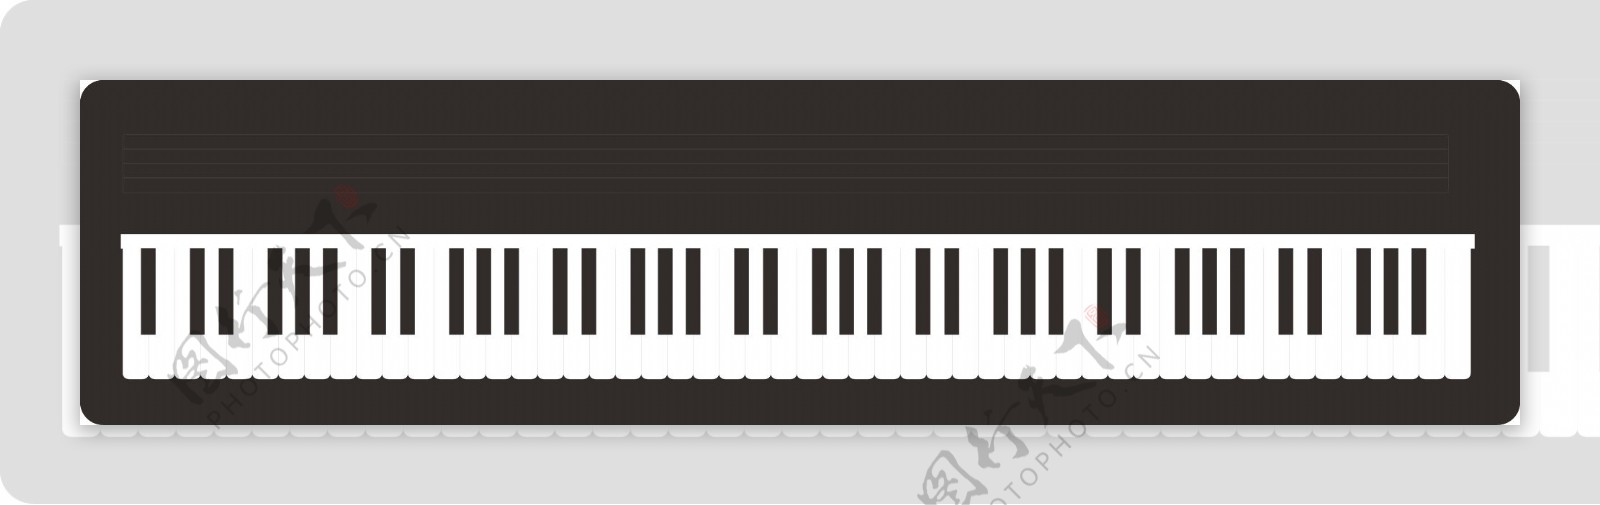 钢琴键盘图片